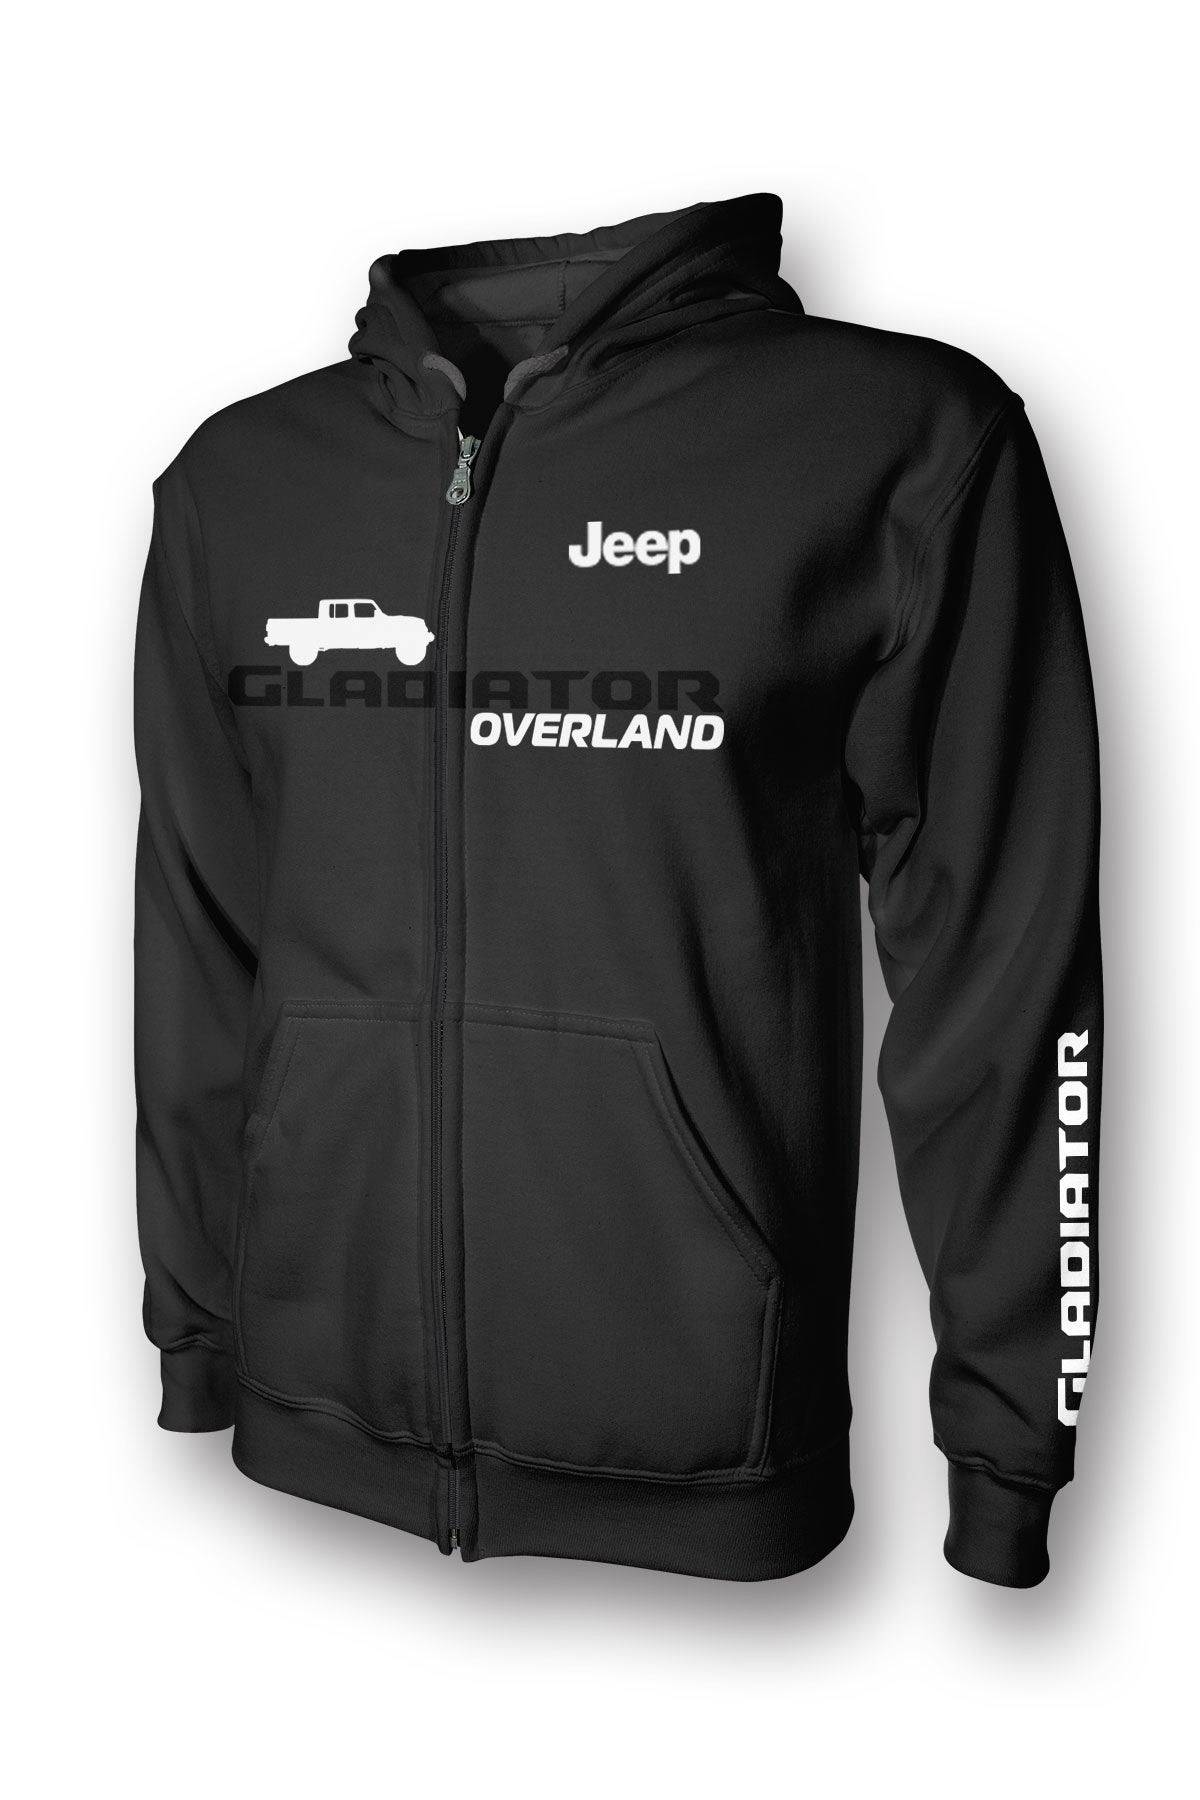 Jeep Gladiator Overland Full-Zip Hoodie – ZEUS